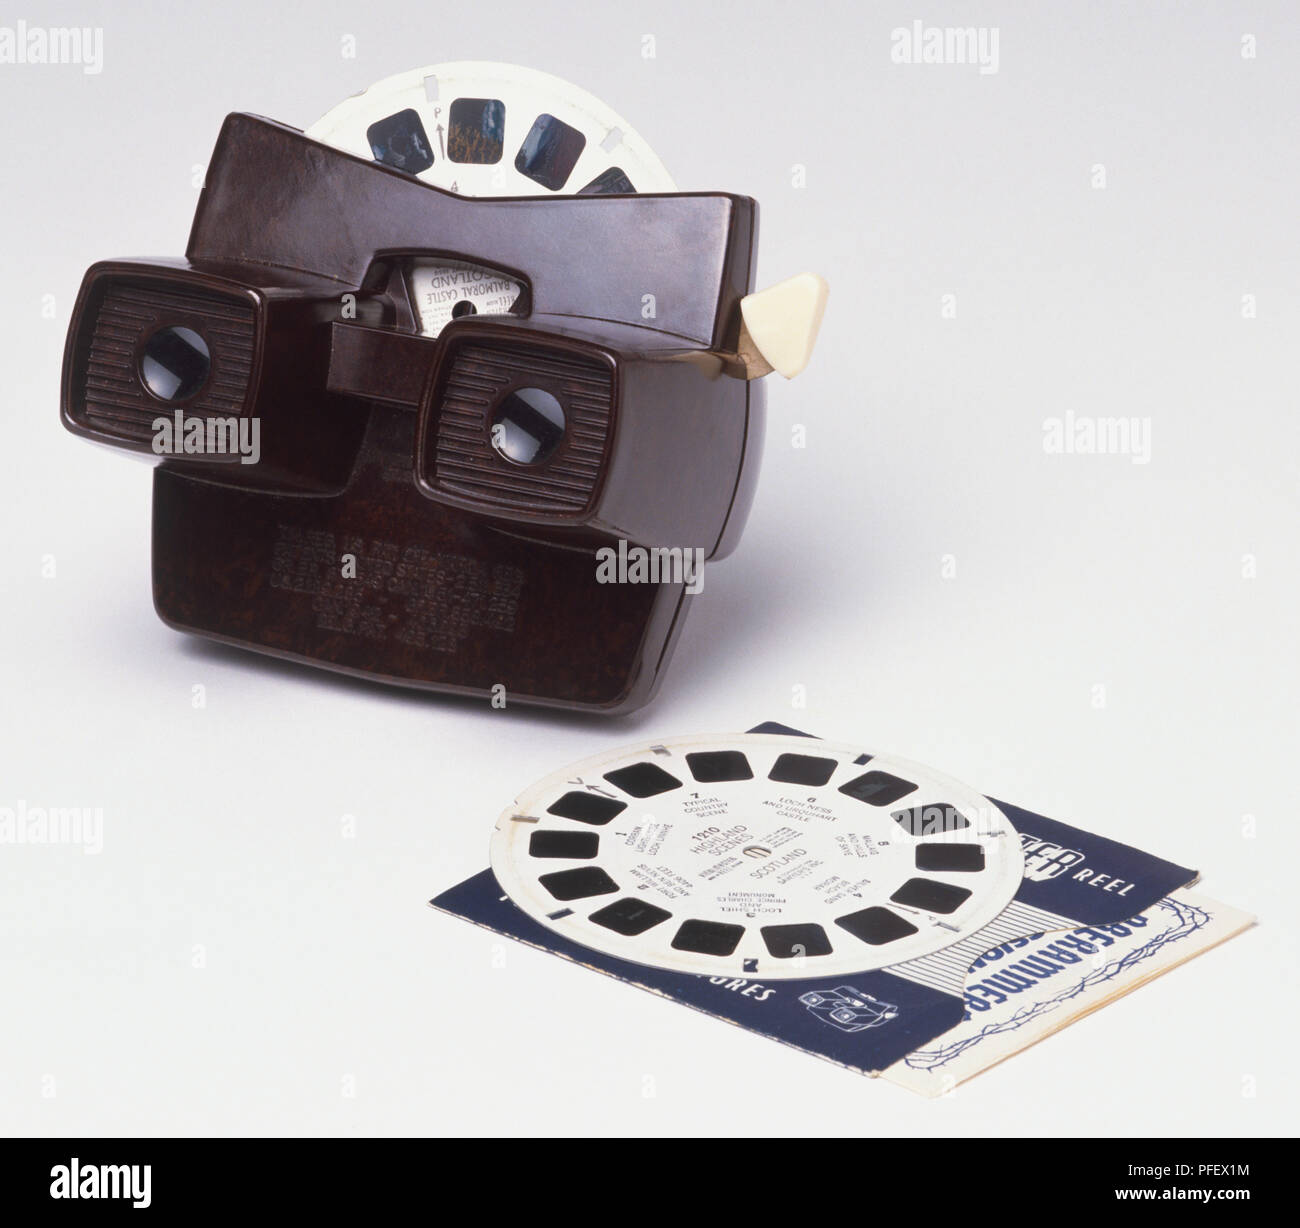 Appareil photo jouet avec 3-d'images sur des disques de papier Banque D'Images